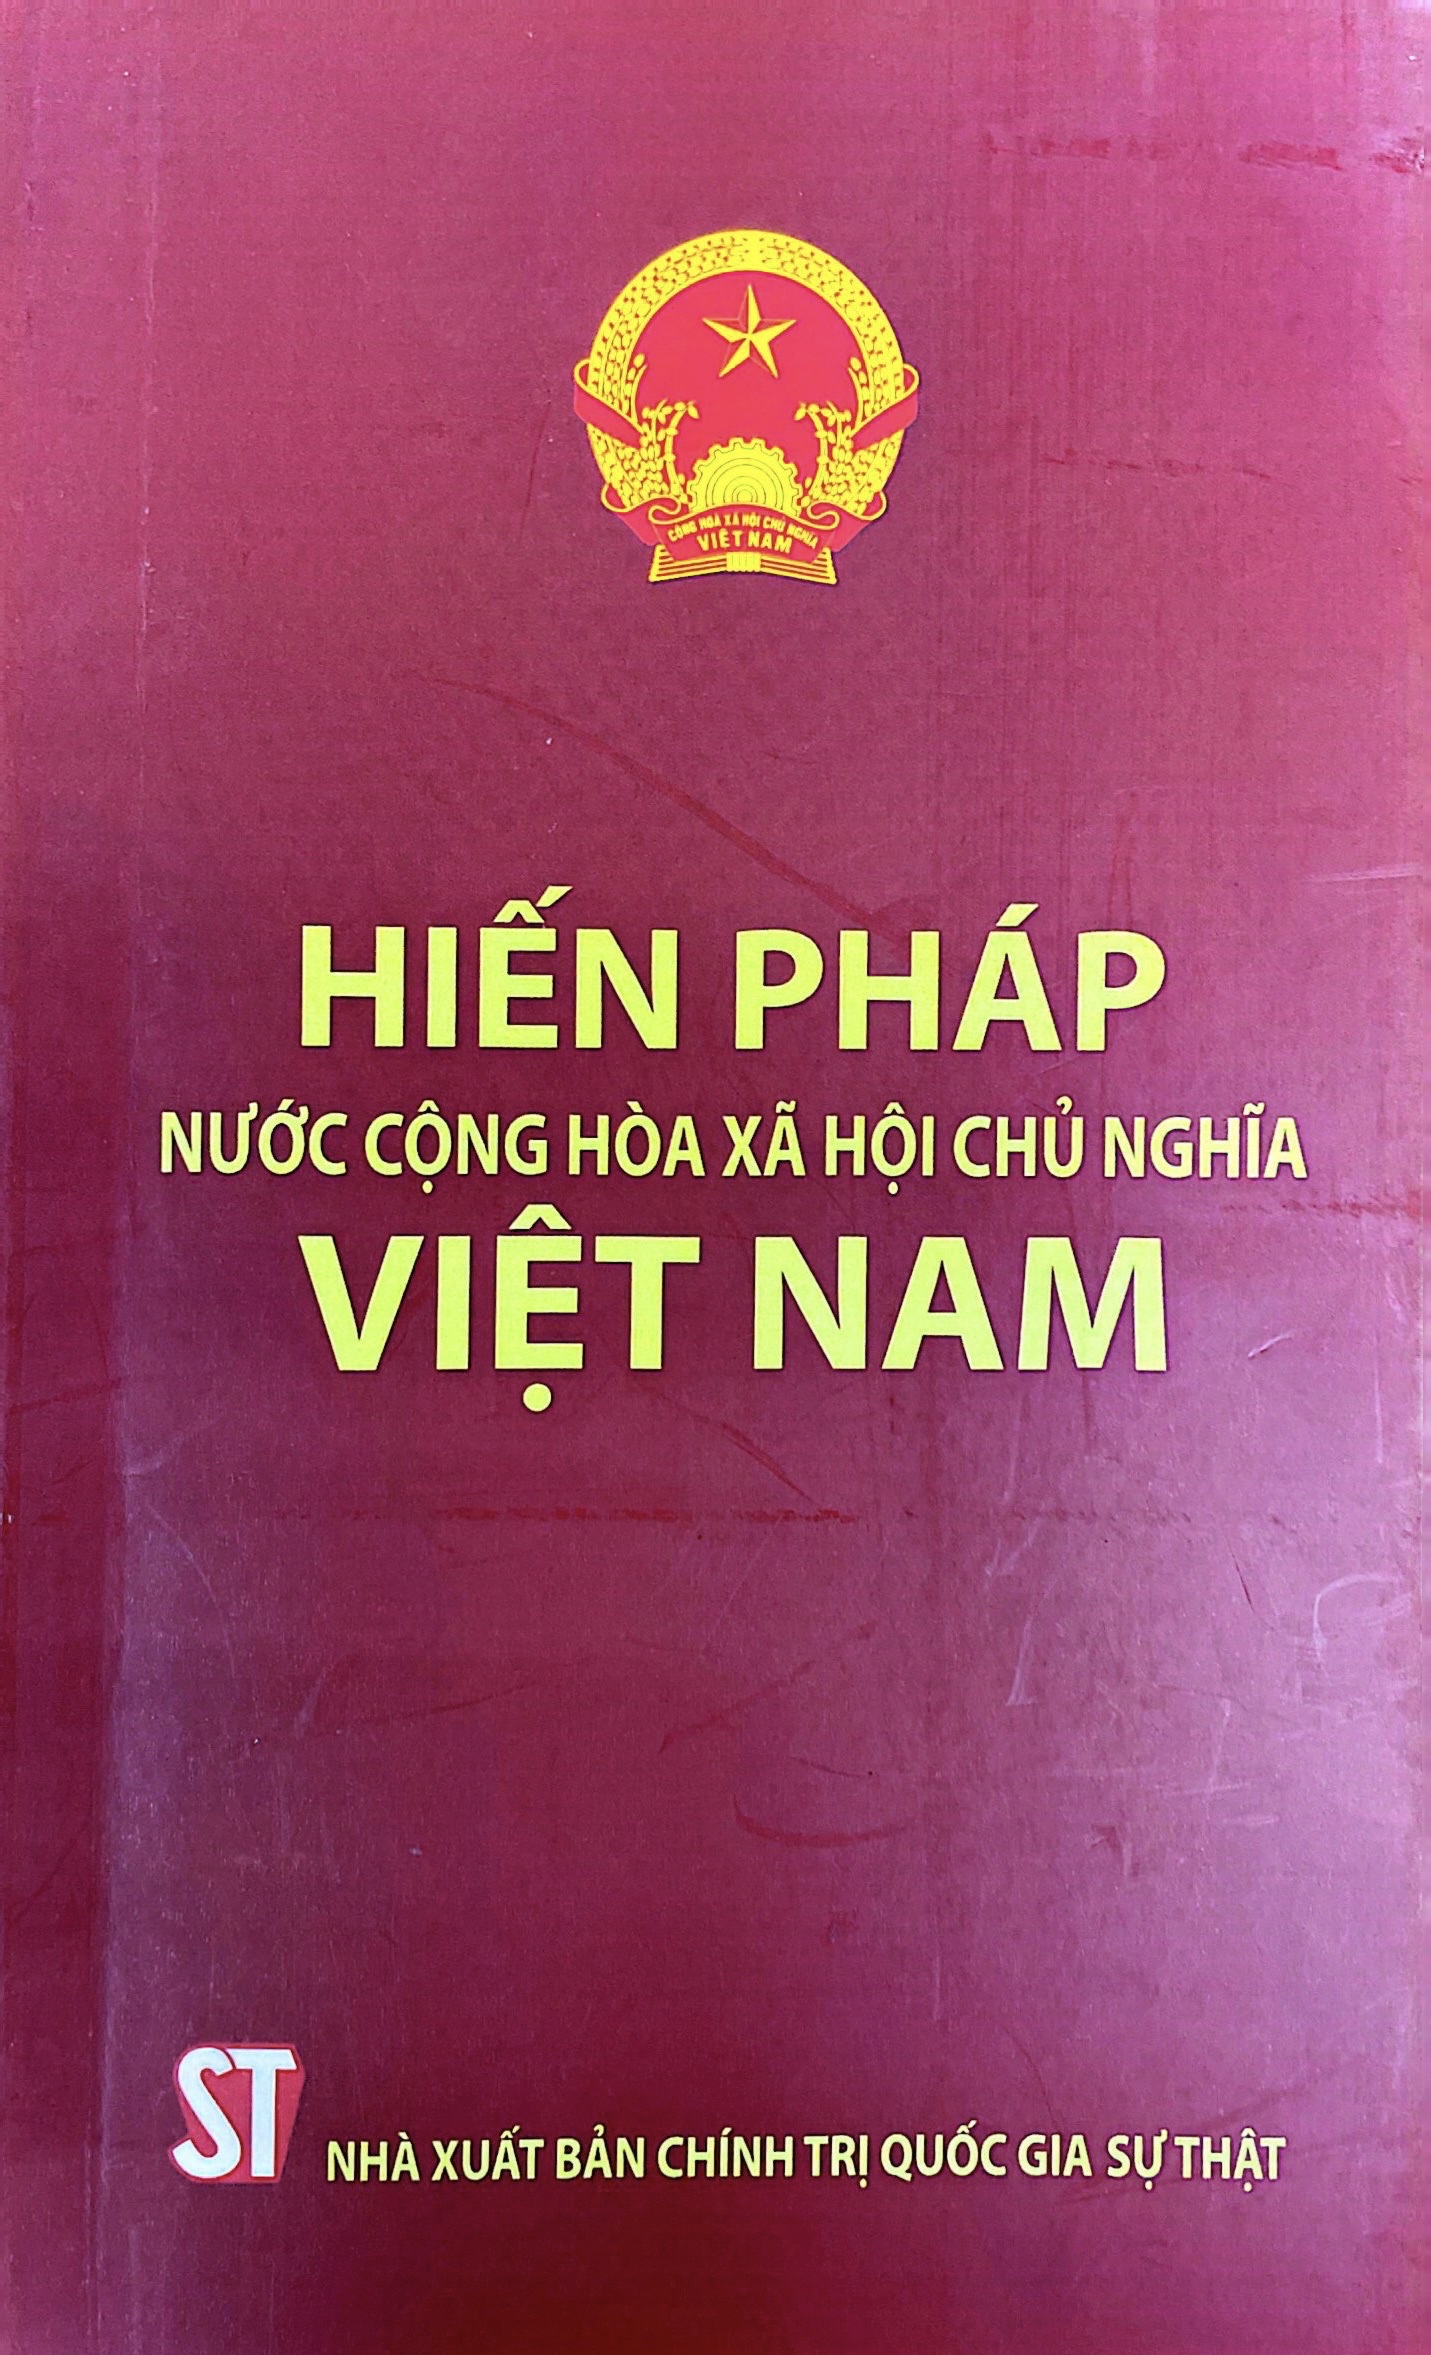 Hiến pháp Nước Cộng hoà xã hội chủ nghĩa Việt Nam